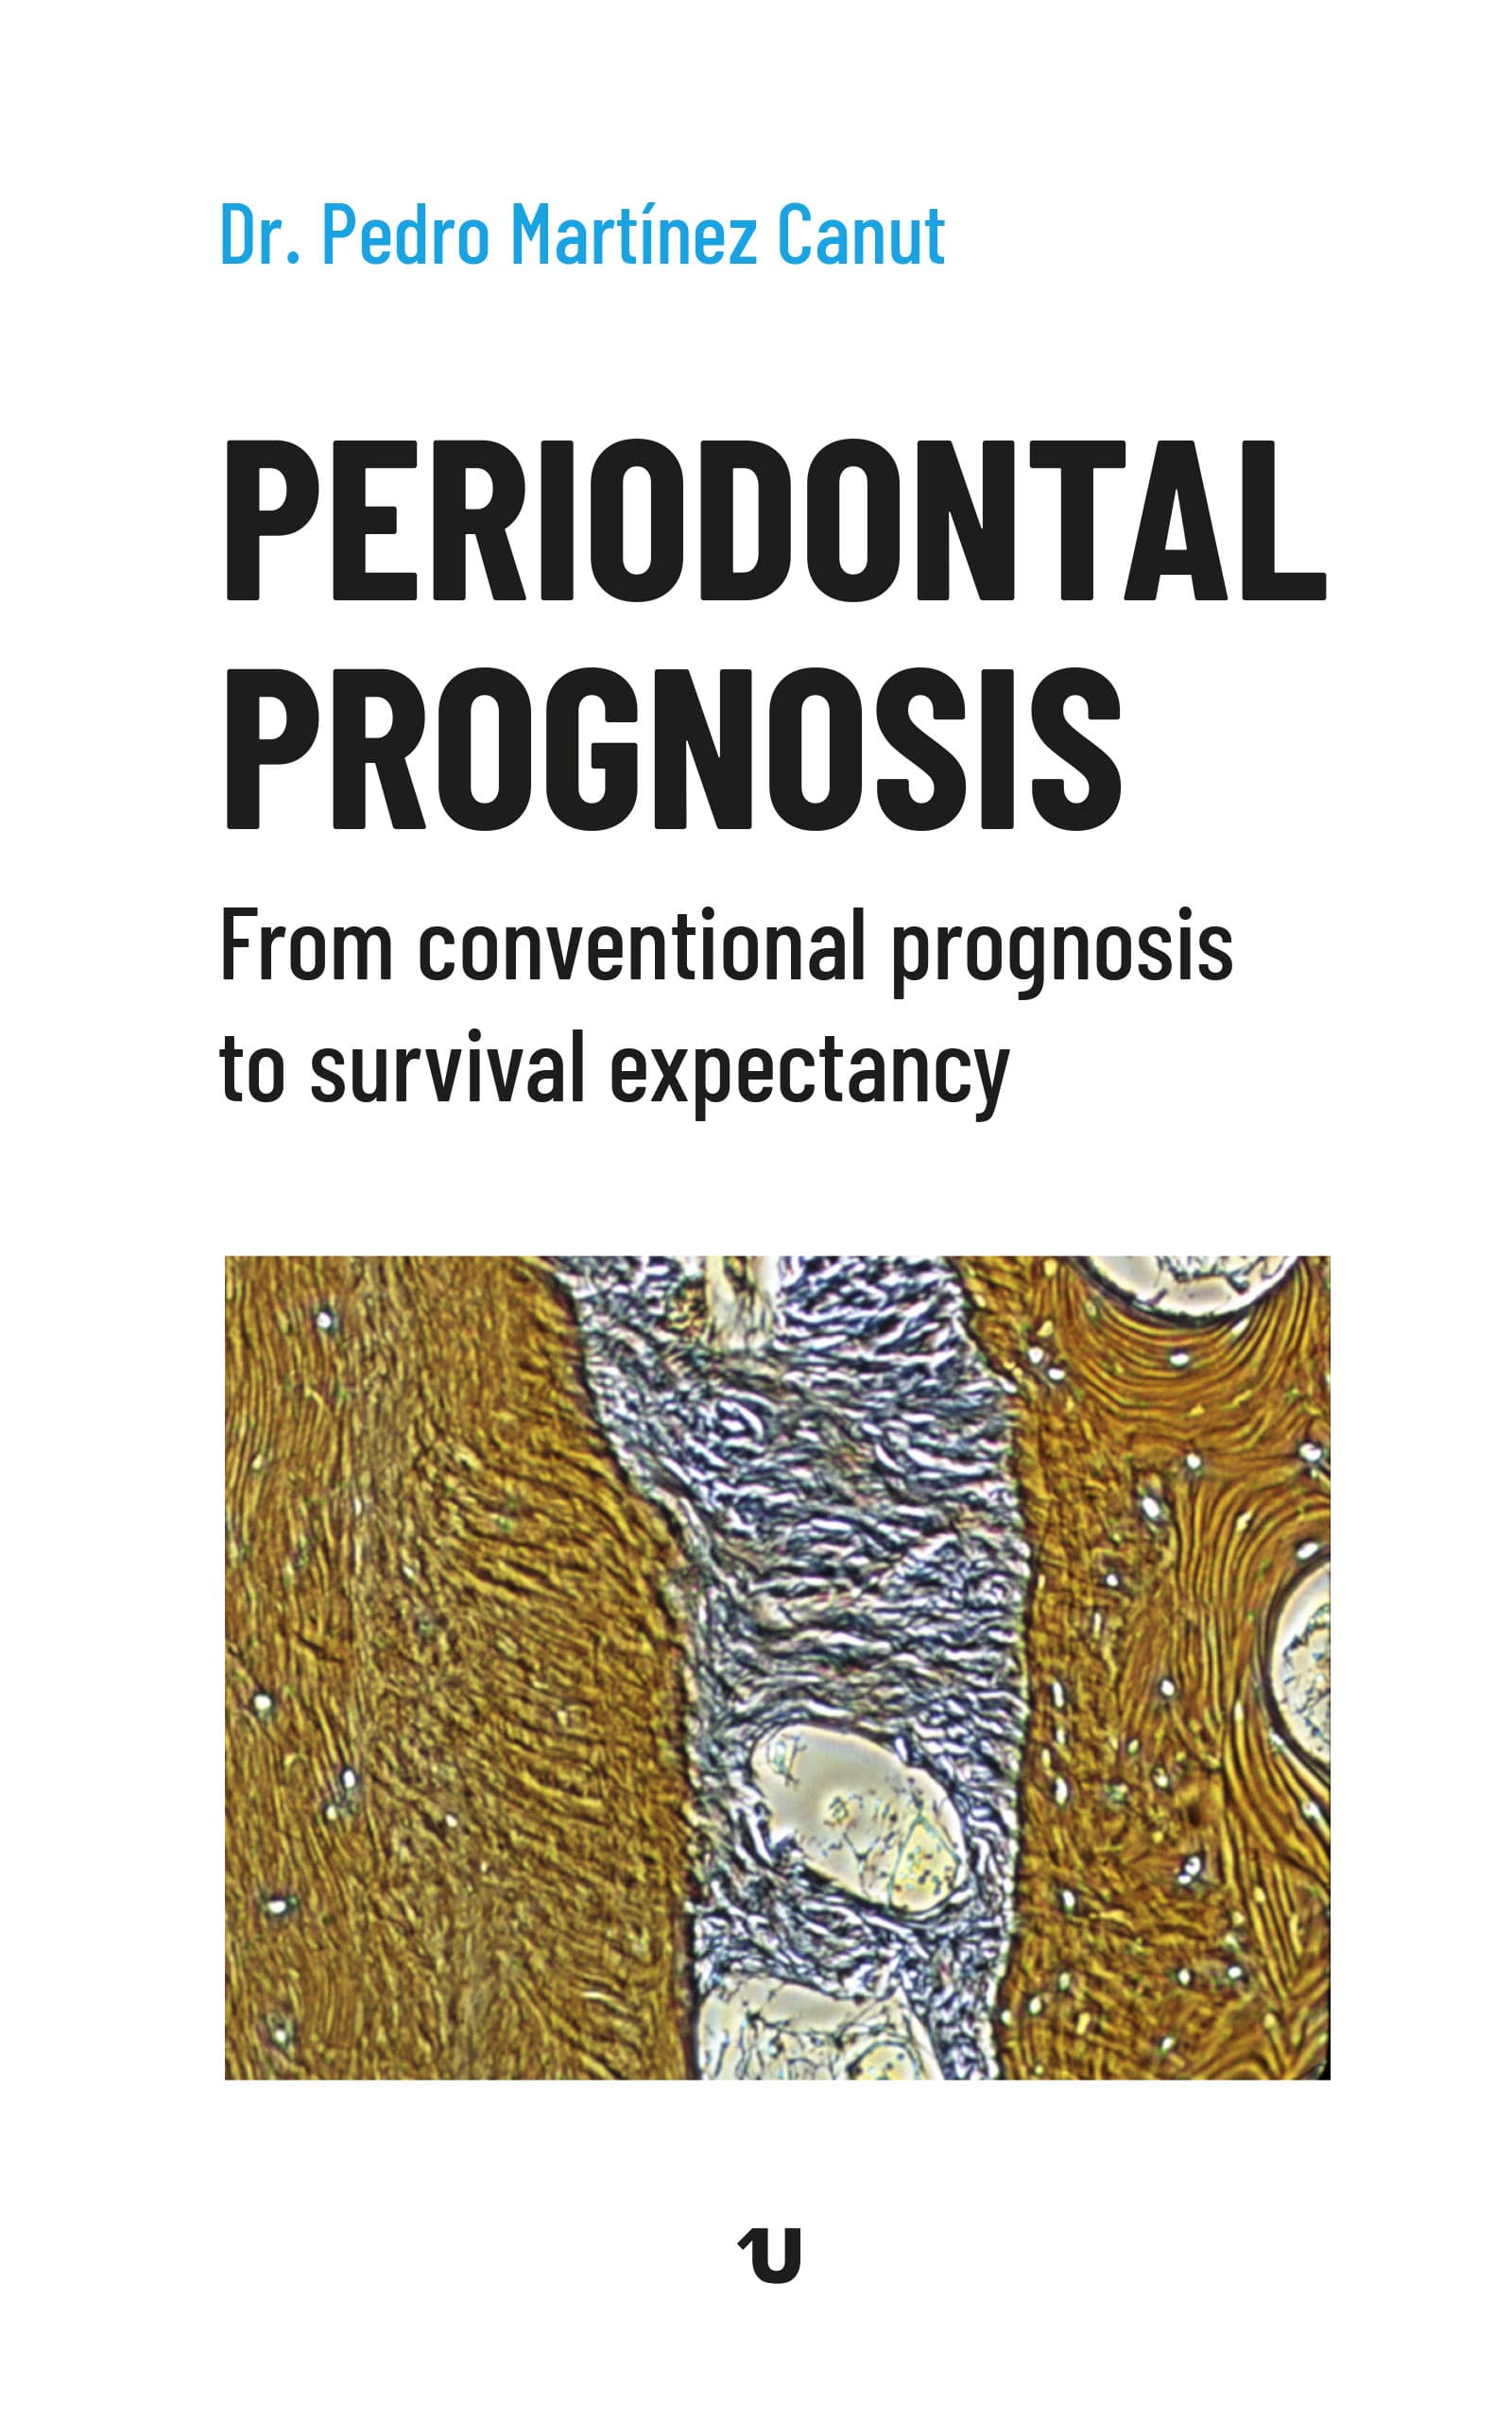 Periodontal Prognosis (ED. UNO)